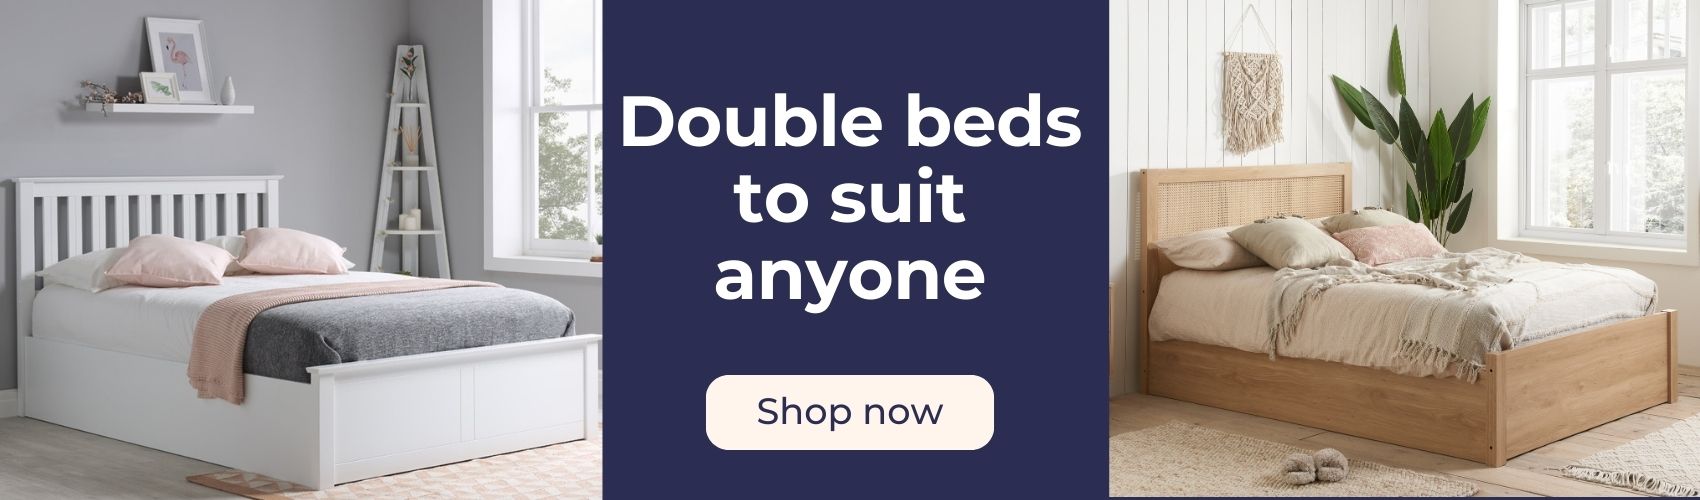 Shop double beds